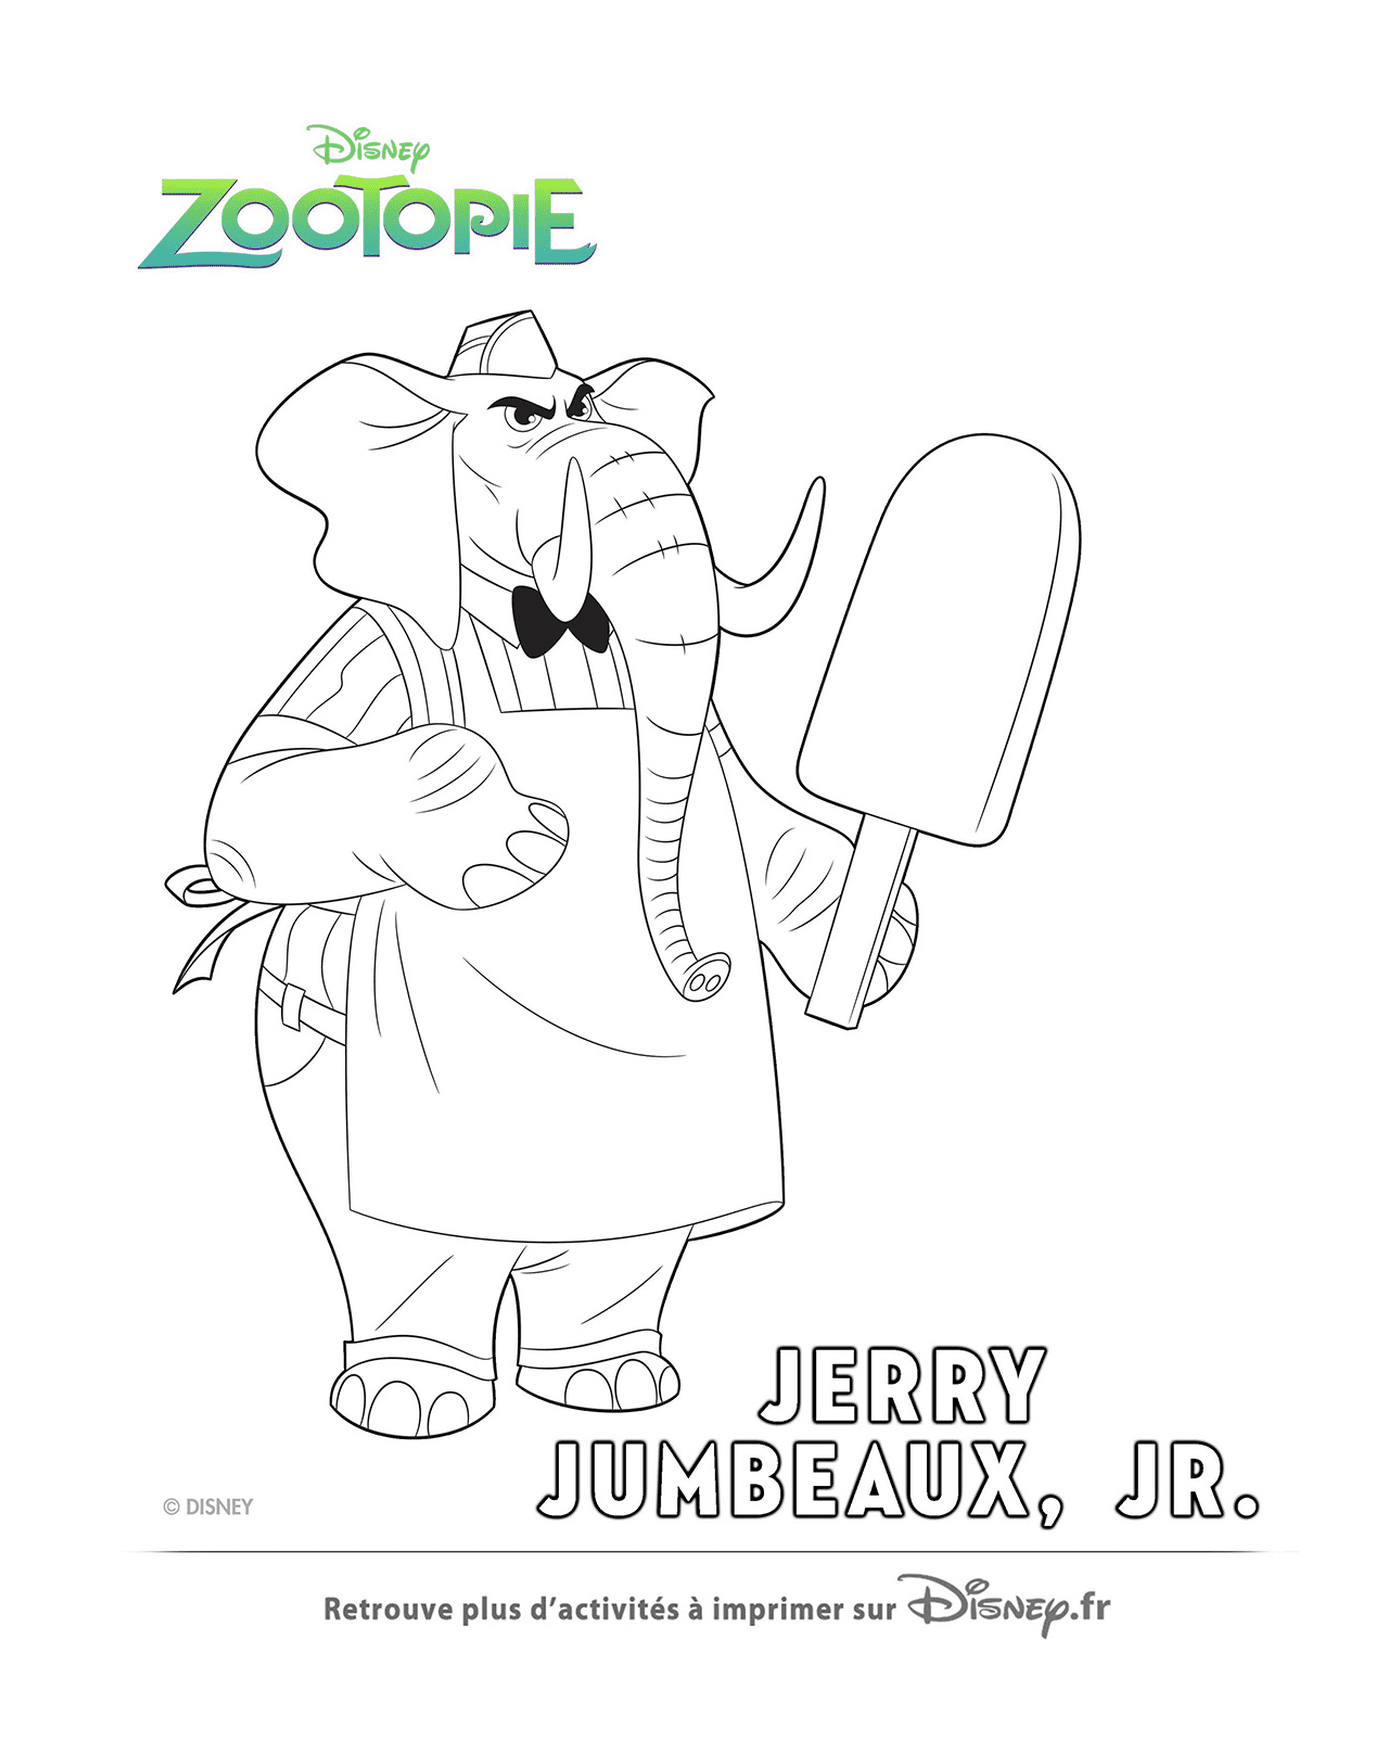  Jerry, Zootopies Eisverkäufer 